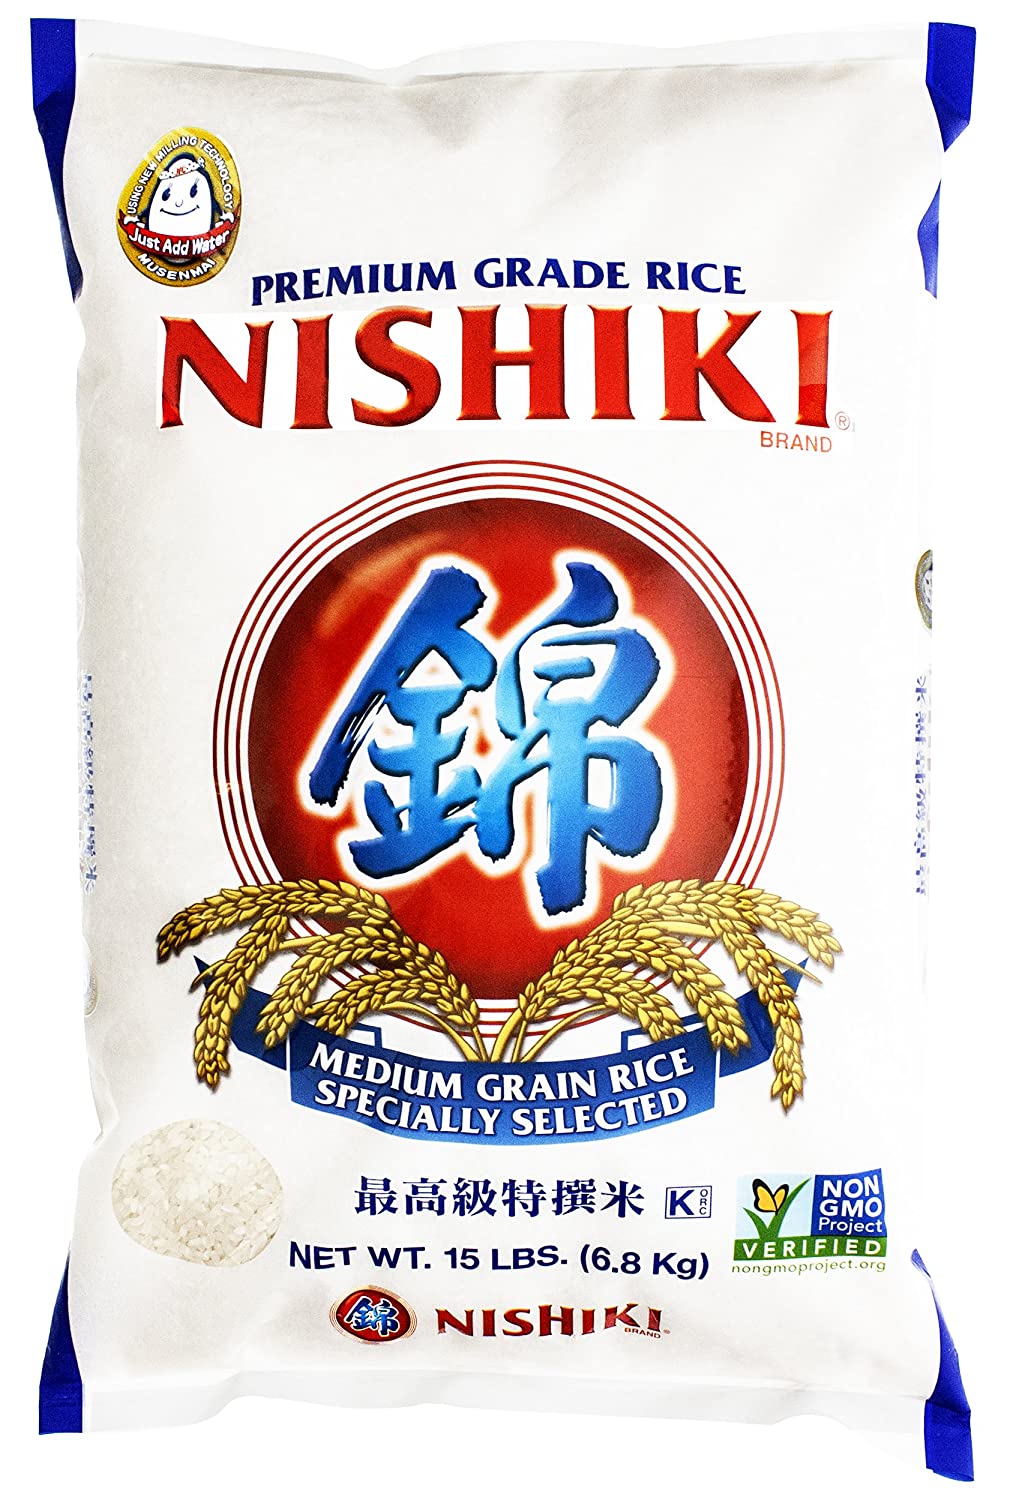 Nishiki Premium Rice, Medium Grain, 240 Oz (S&S) $15.1